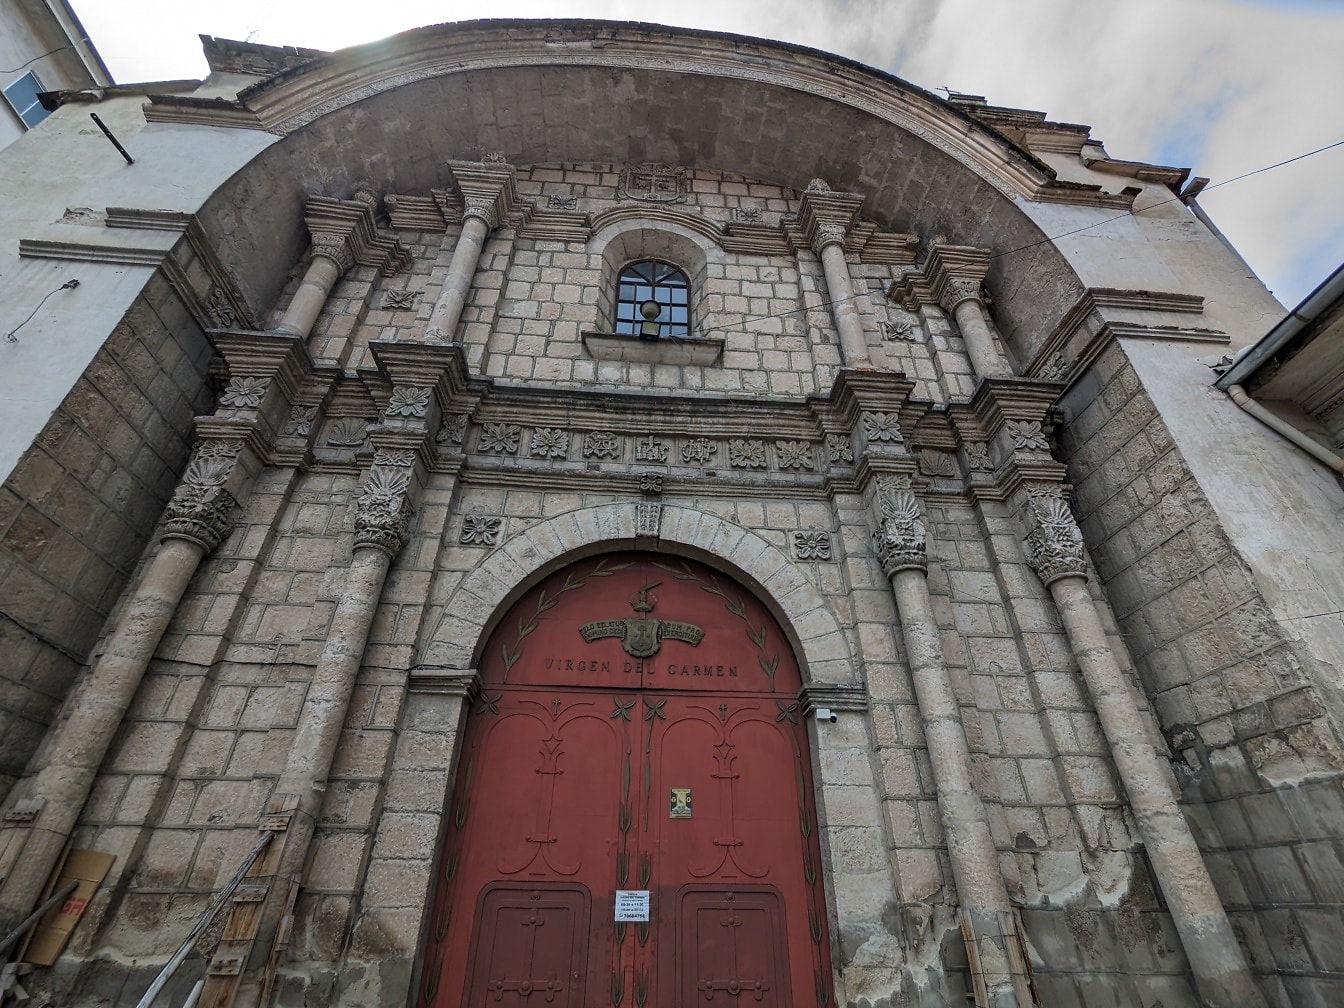 Wejście do kościoła Matki Boskiej Carmen z czerwonymi drzwiami wejściowymi wykonanymi z żeliwa